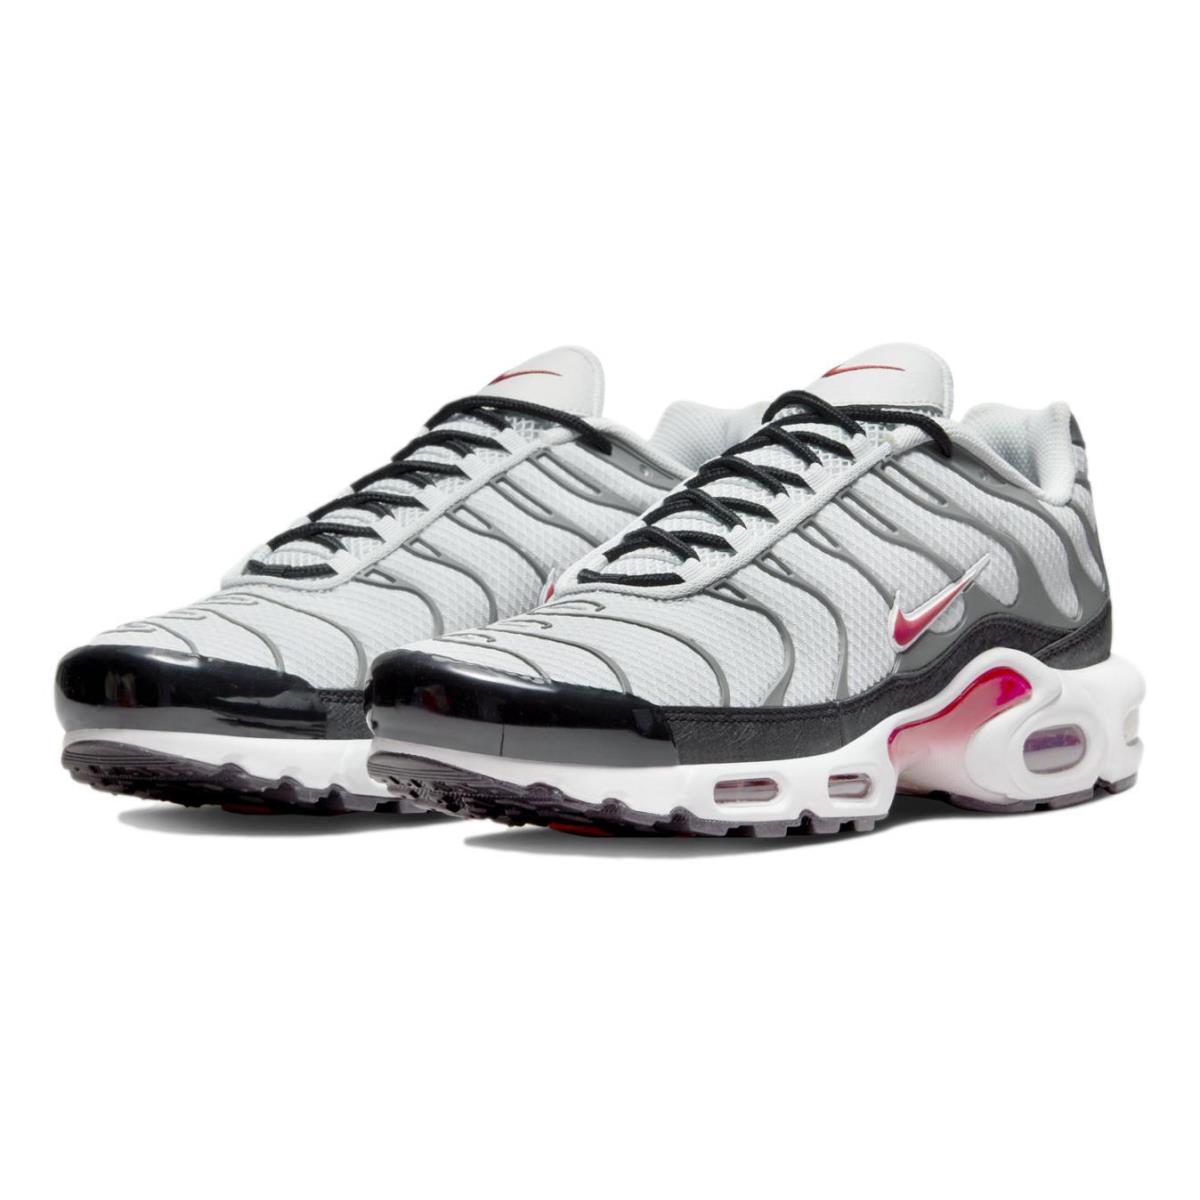 Nike Men`s Air Max Plus `photon Dust Particle Grey` Shoes Sneakers DM0032-002